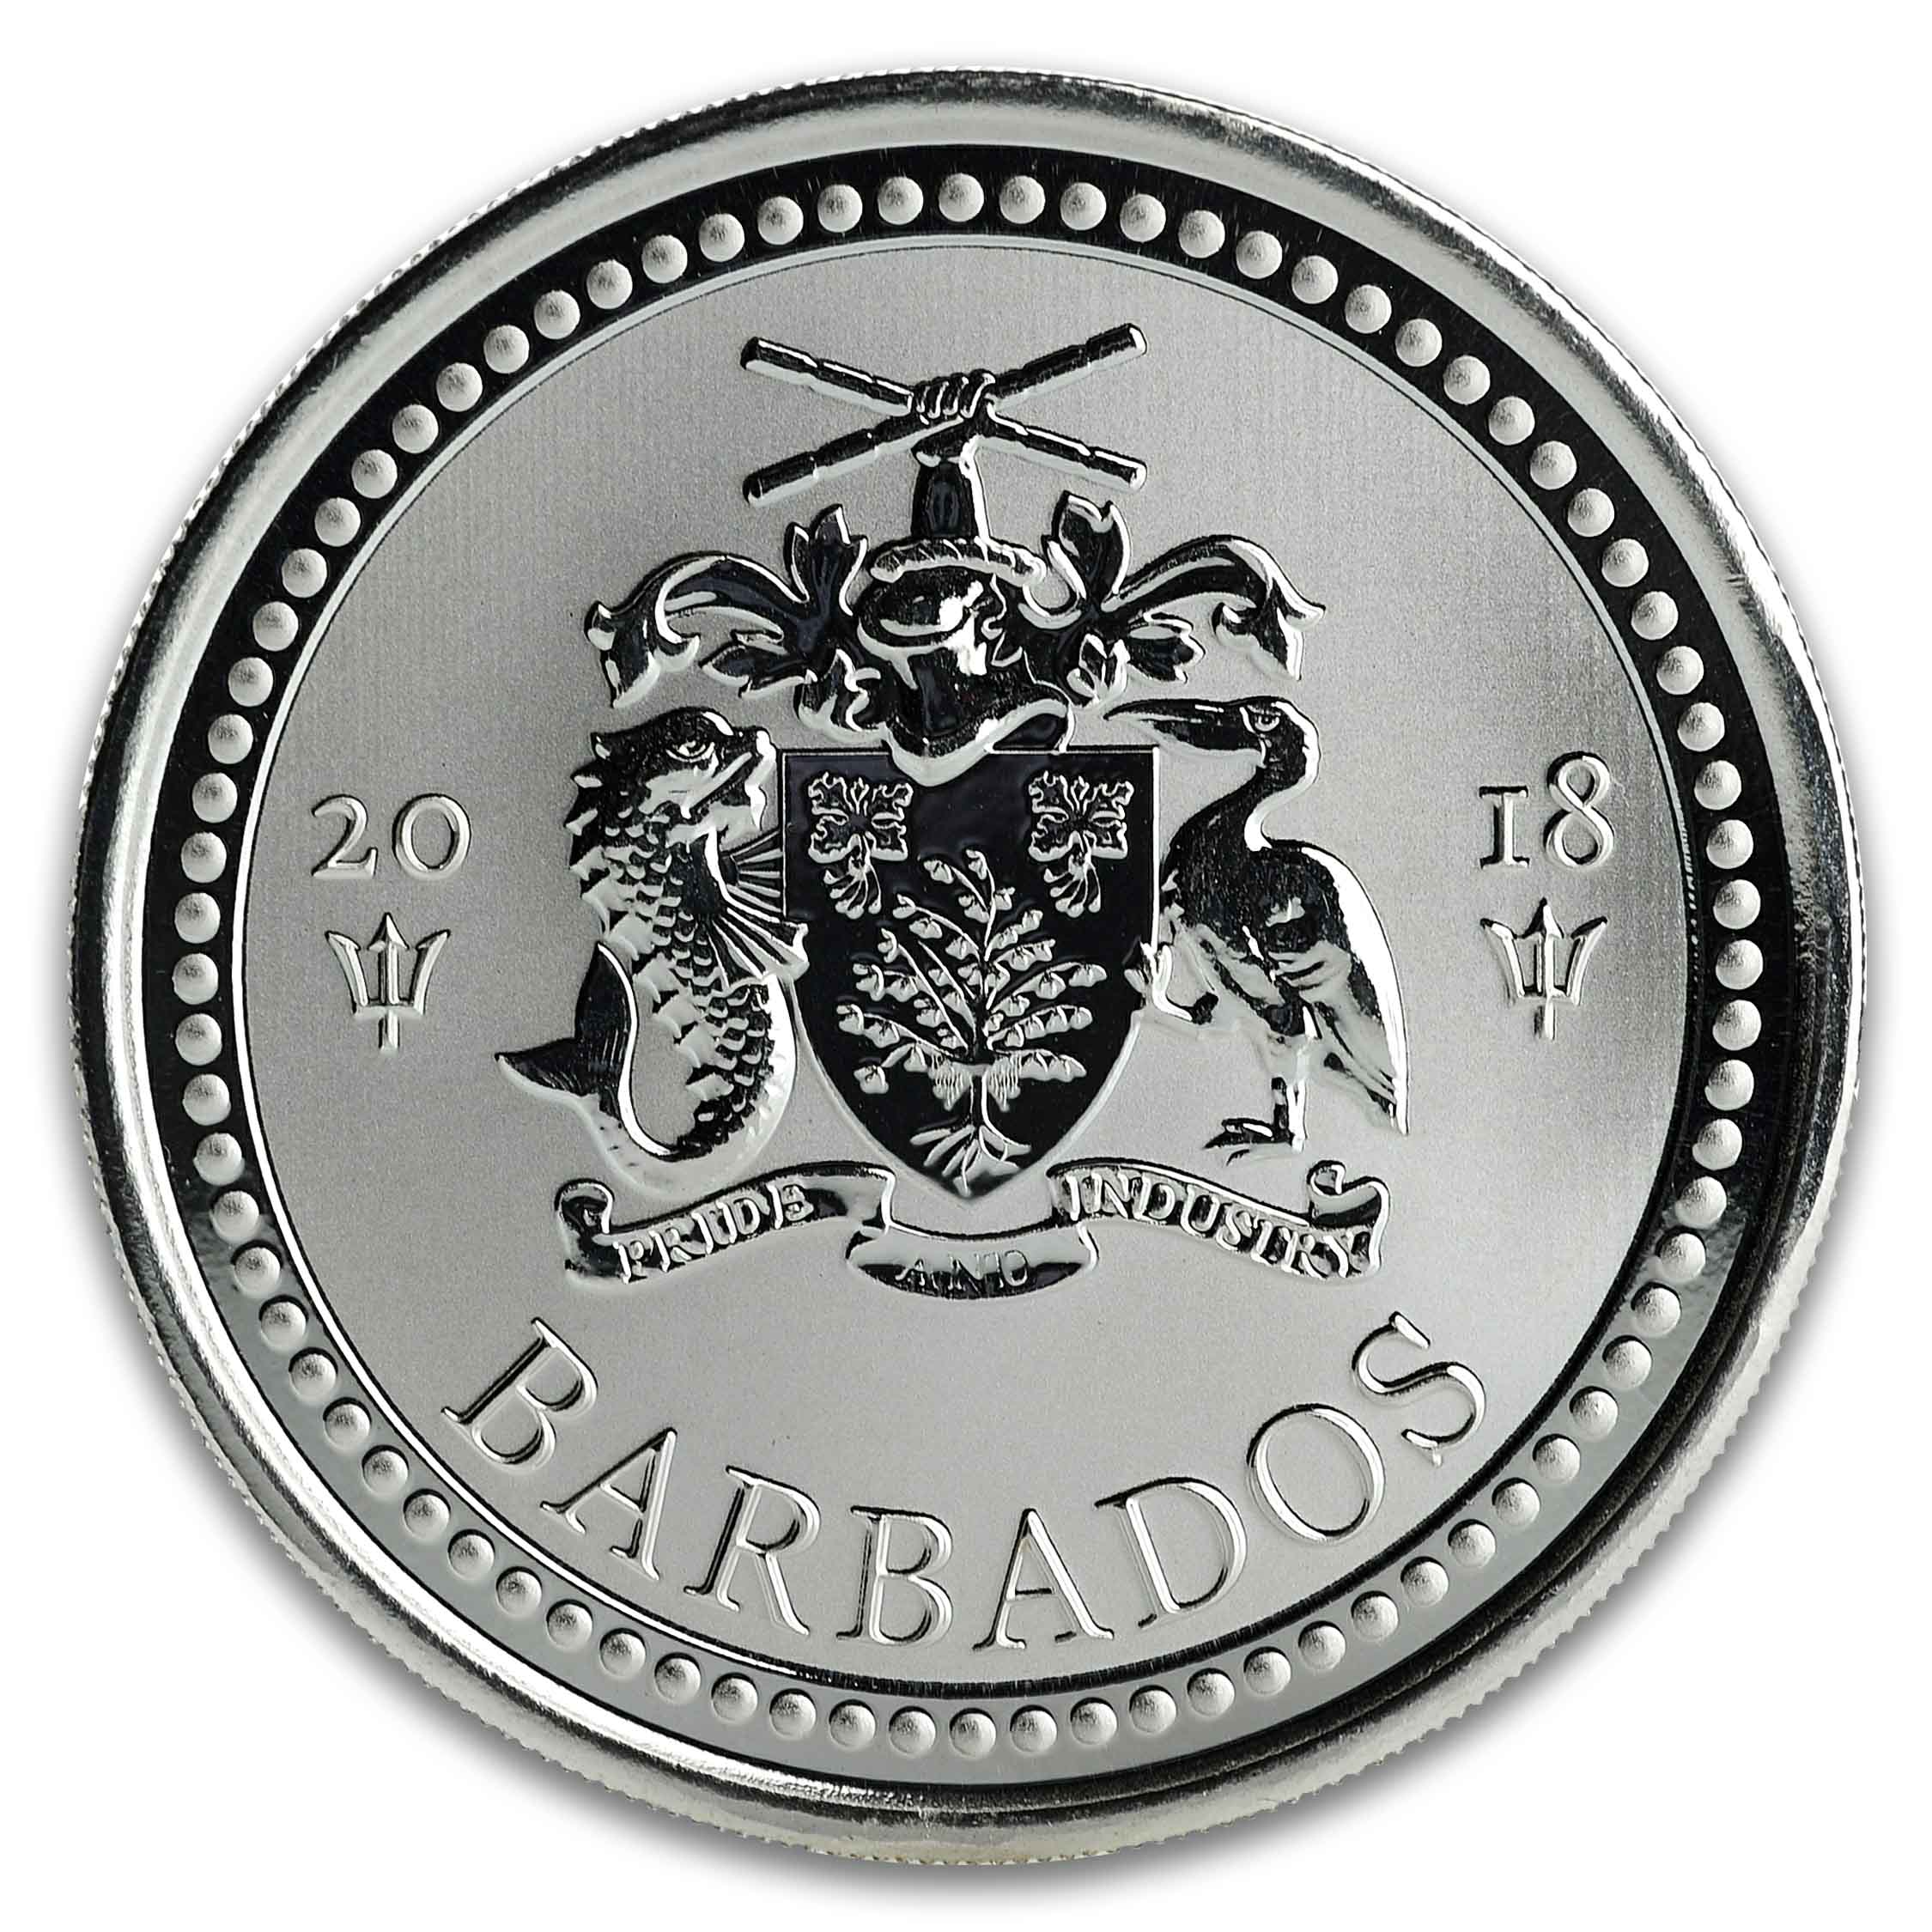 Barbados Trident Silver - 1 oz Silver Coin Obverse